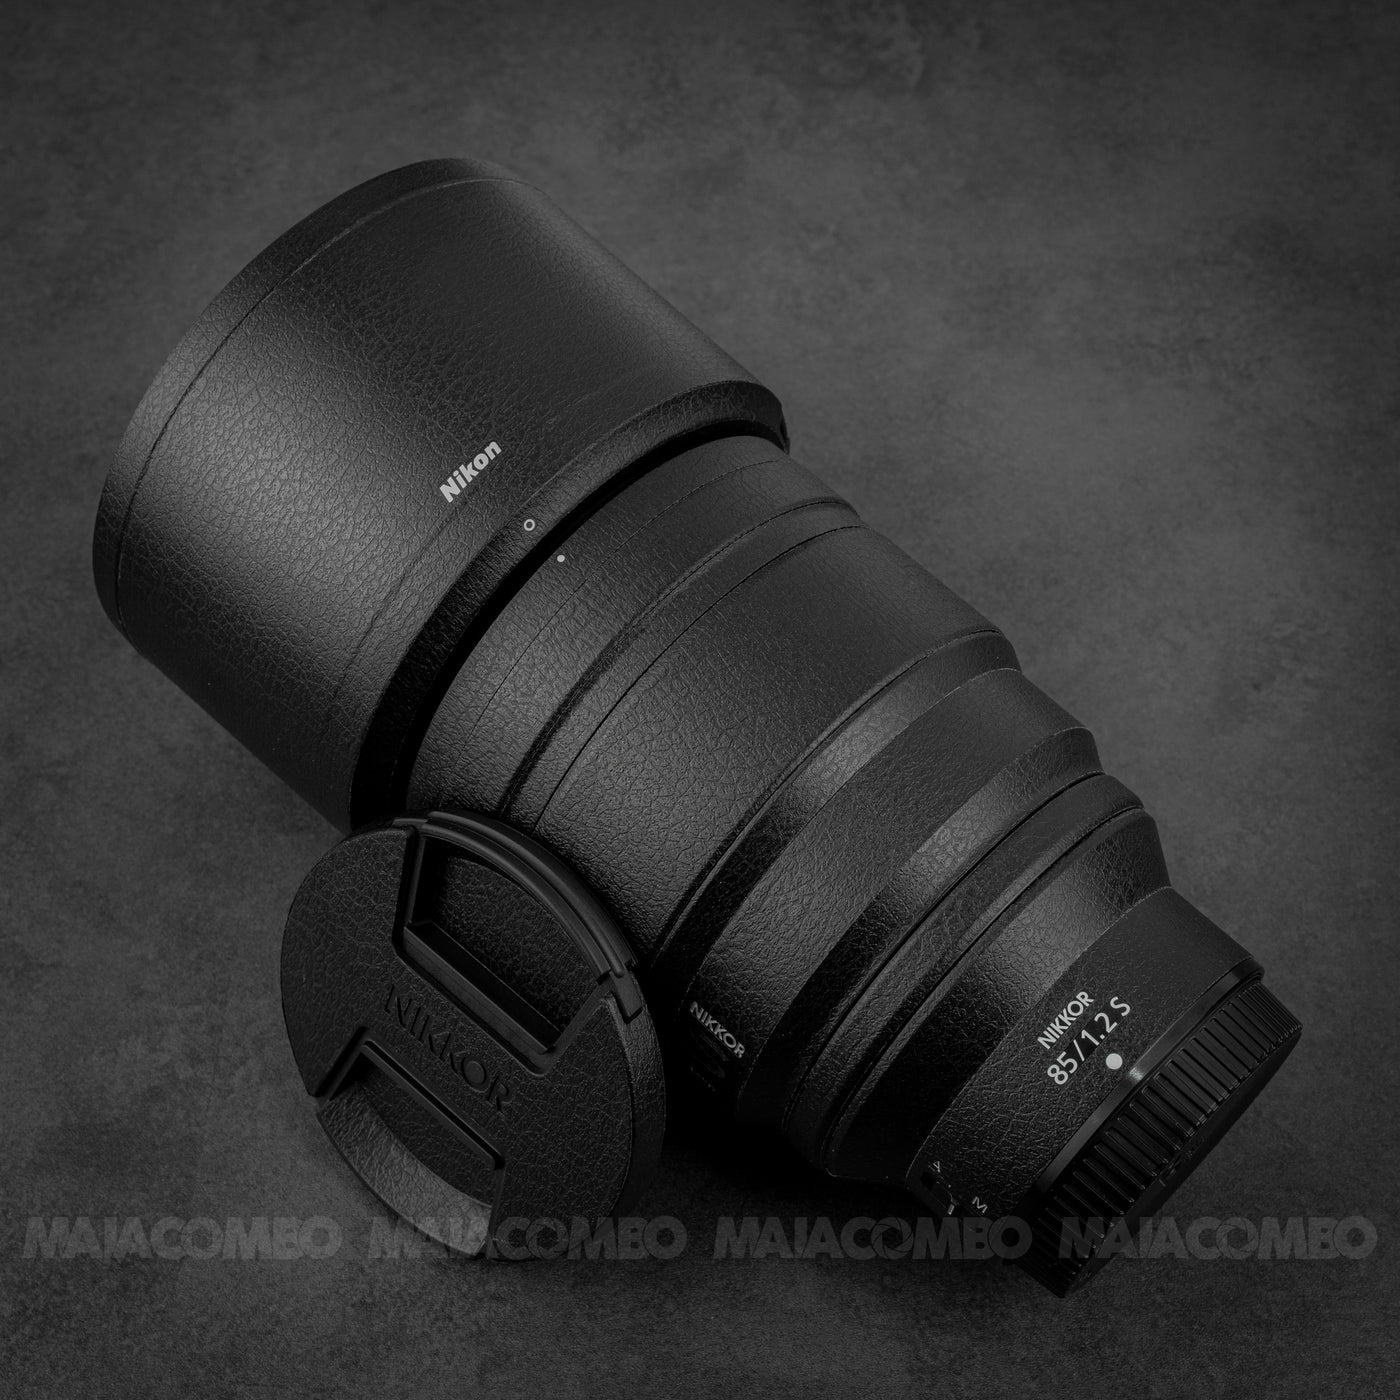 Nikon NIKKOR Z 85mm f/1.2 S Skin/ Wrap